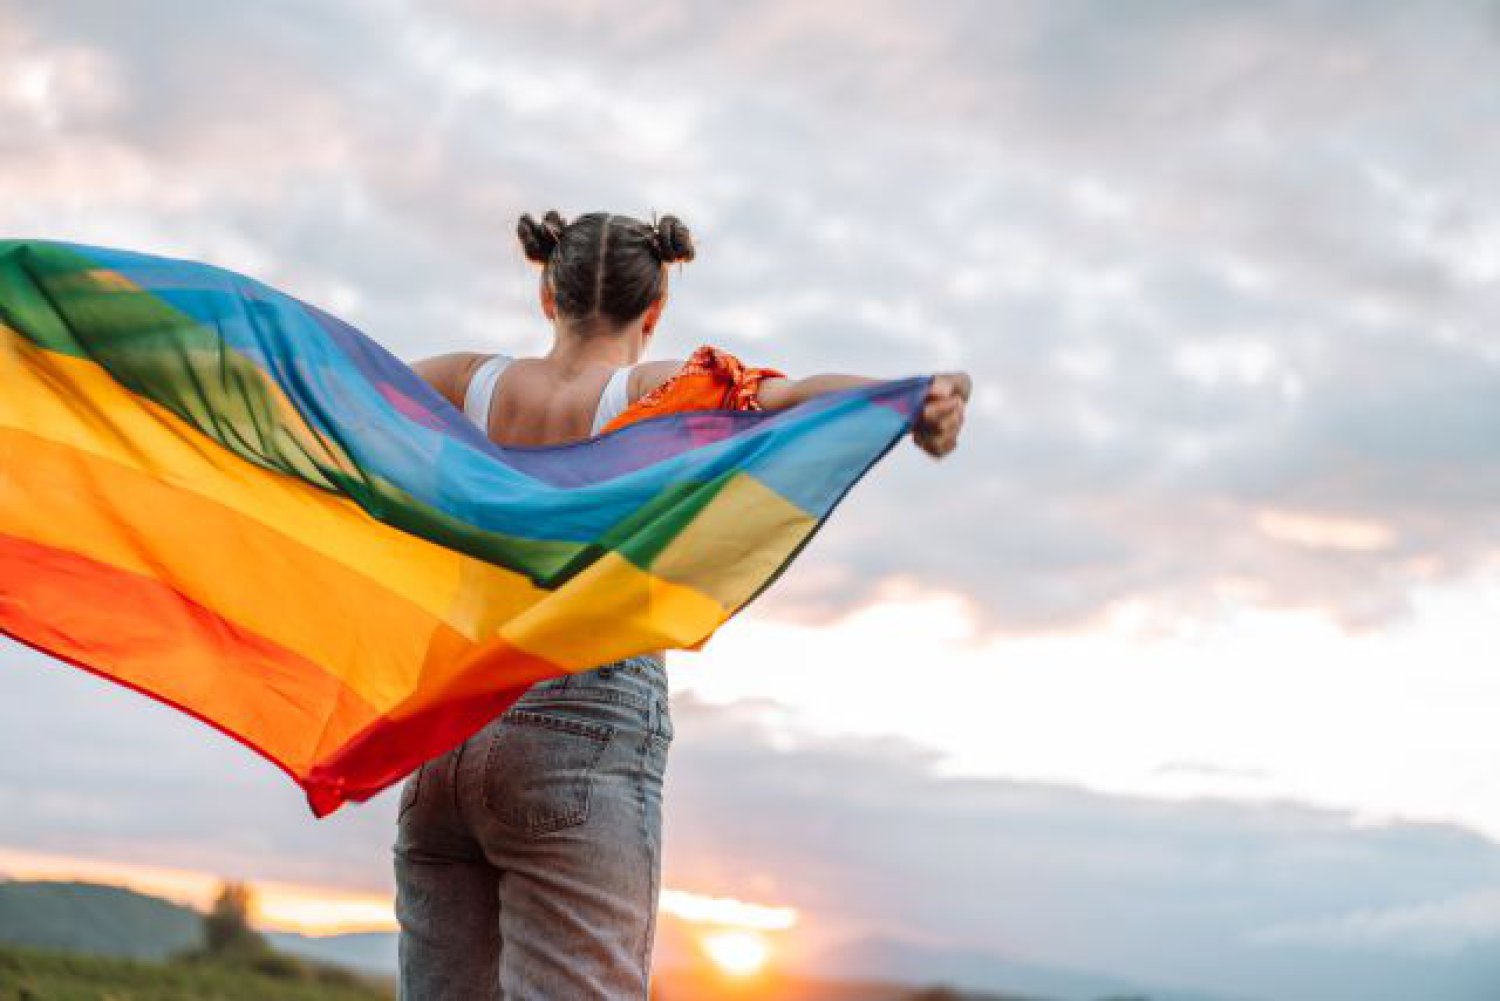 Feliz día del Orgullo LGBT+ 2022! 22 frases para reivindicar los derechos  del colectivo este 28 de junio | Actualidad | LOS40